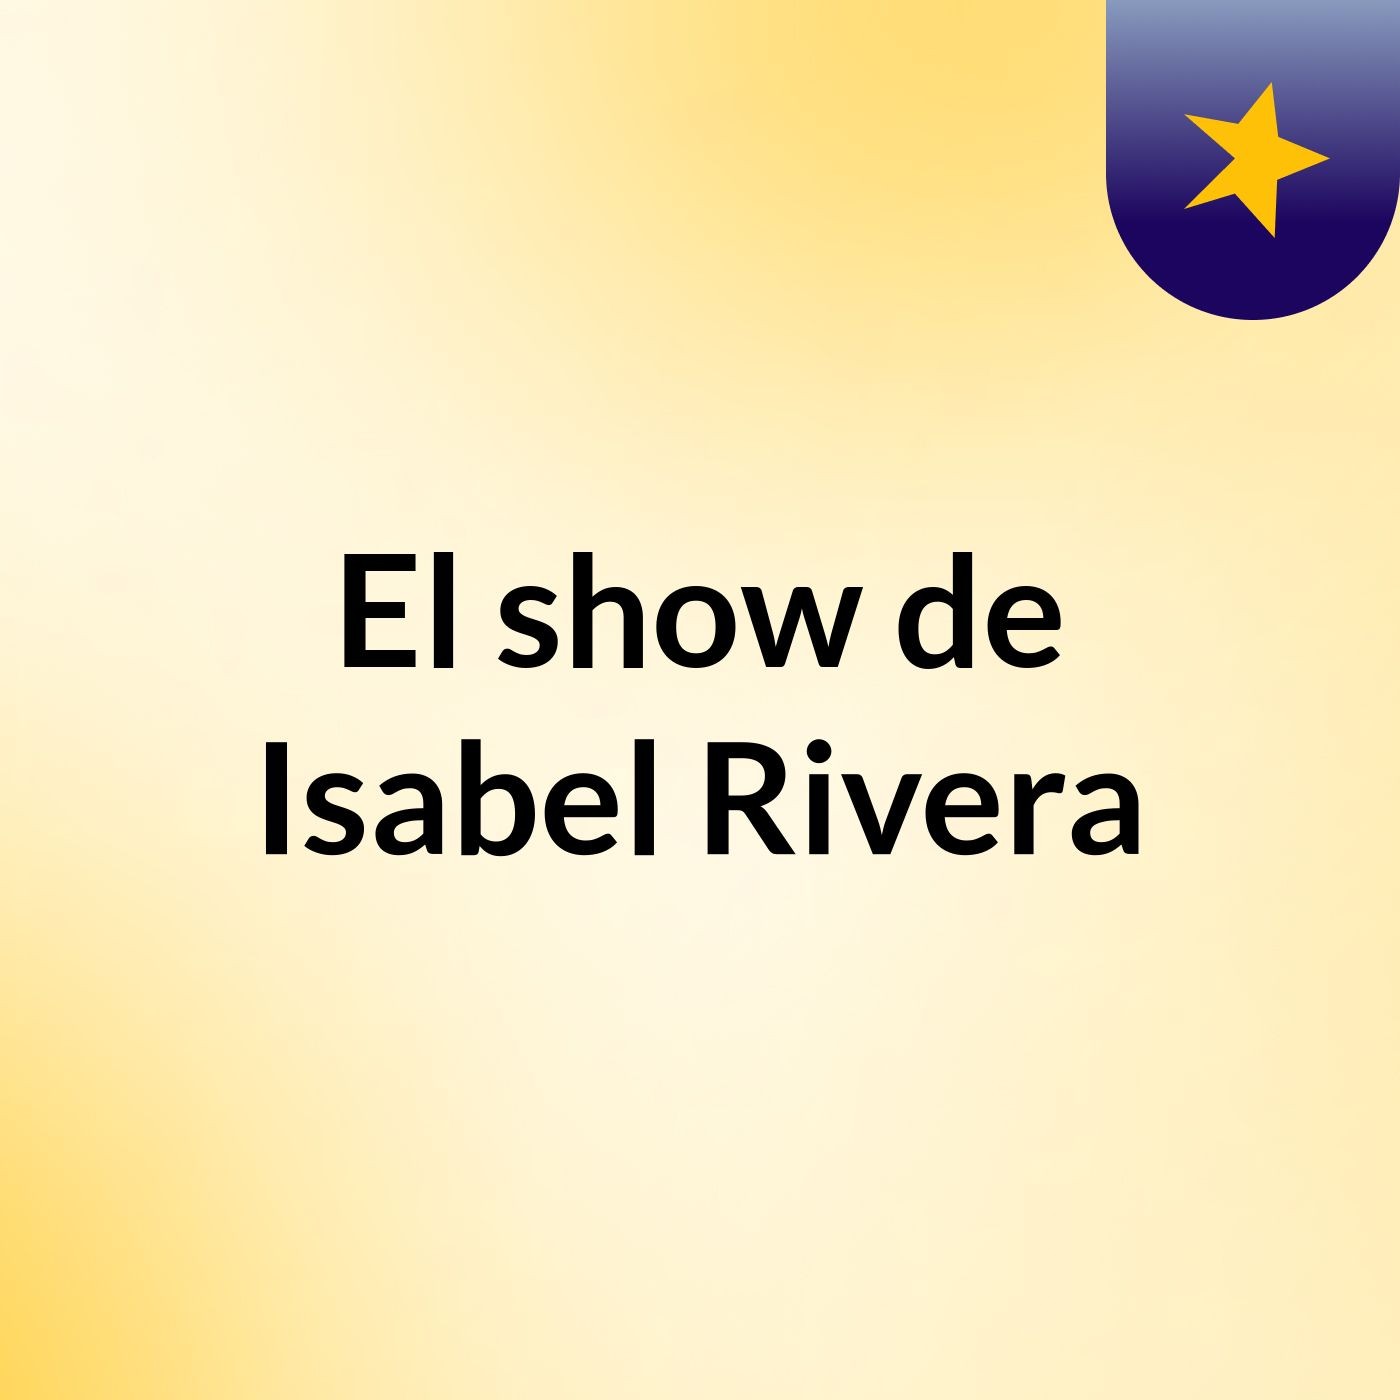 El show de Isabel Rivera